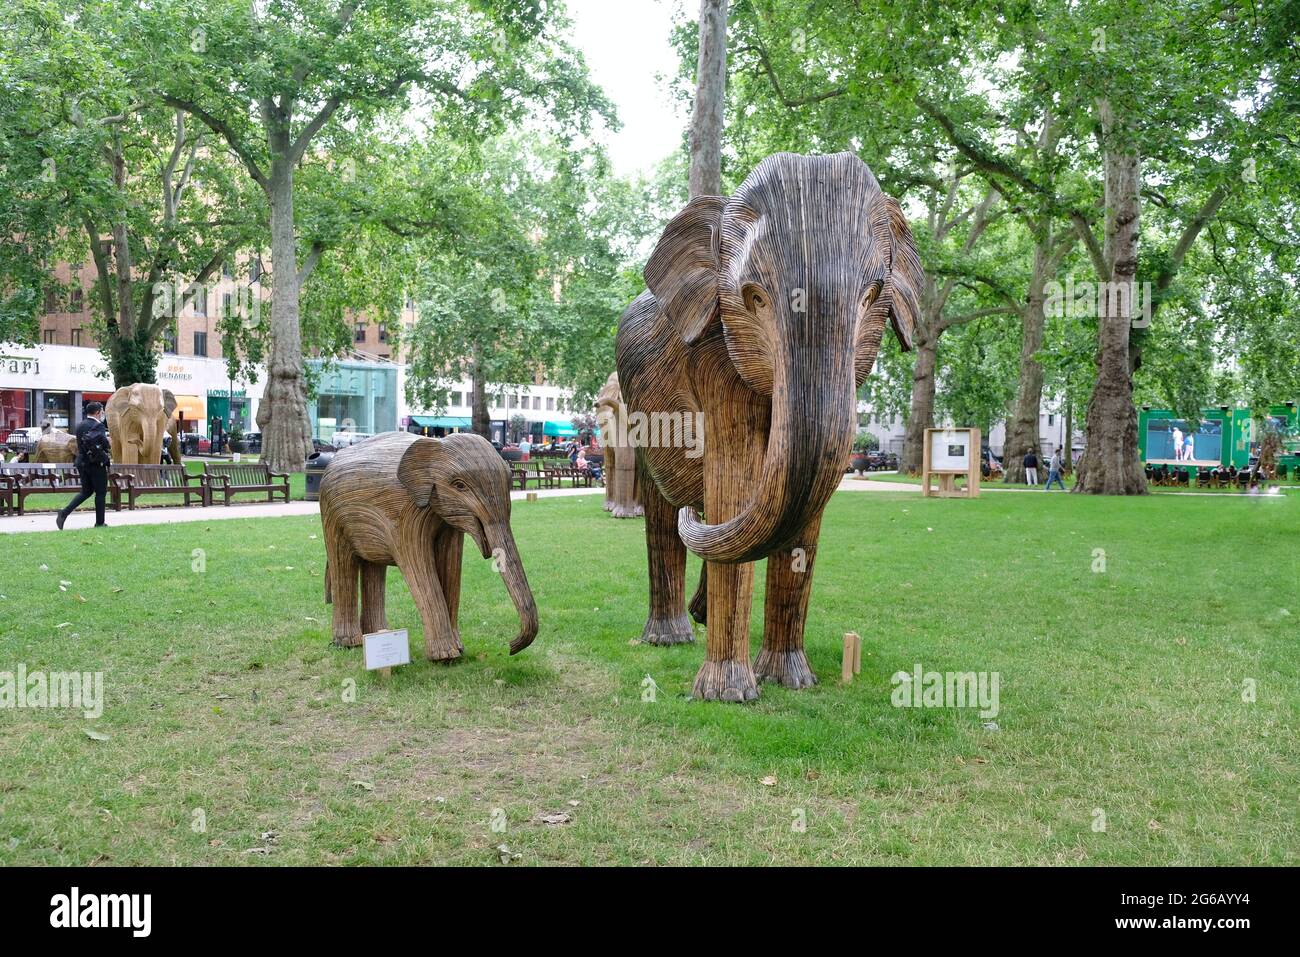 Una manada de elefantes se exhibe en los alrededores verdes de la Plaza Berkerley como parte de una campaña ambiental para destacar la extinción de animales. Foto de stock